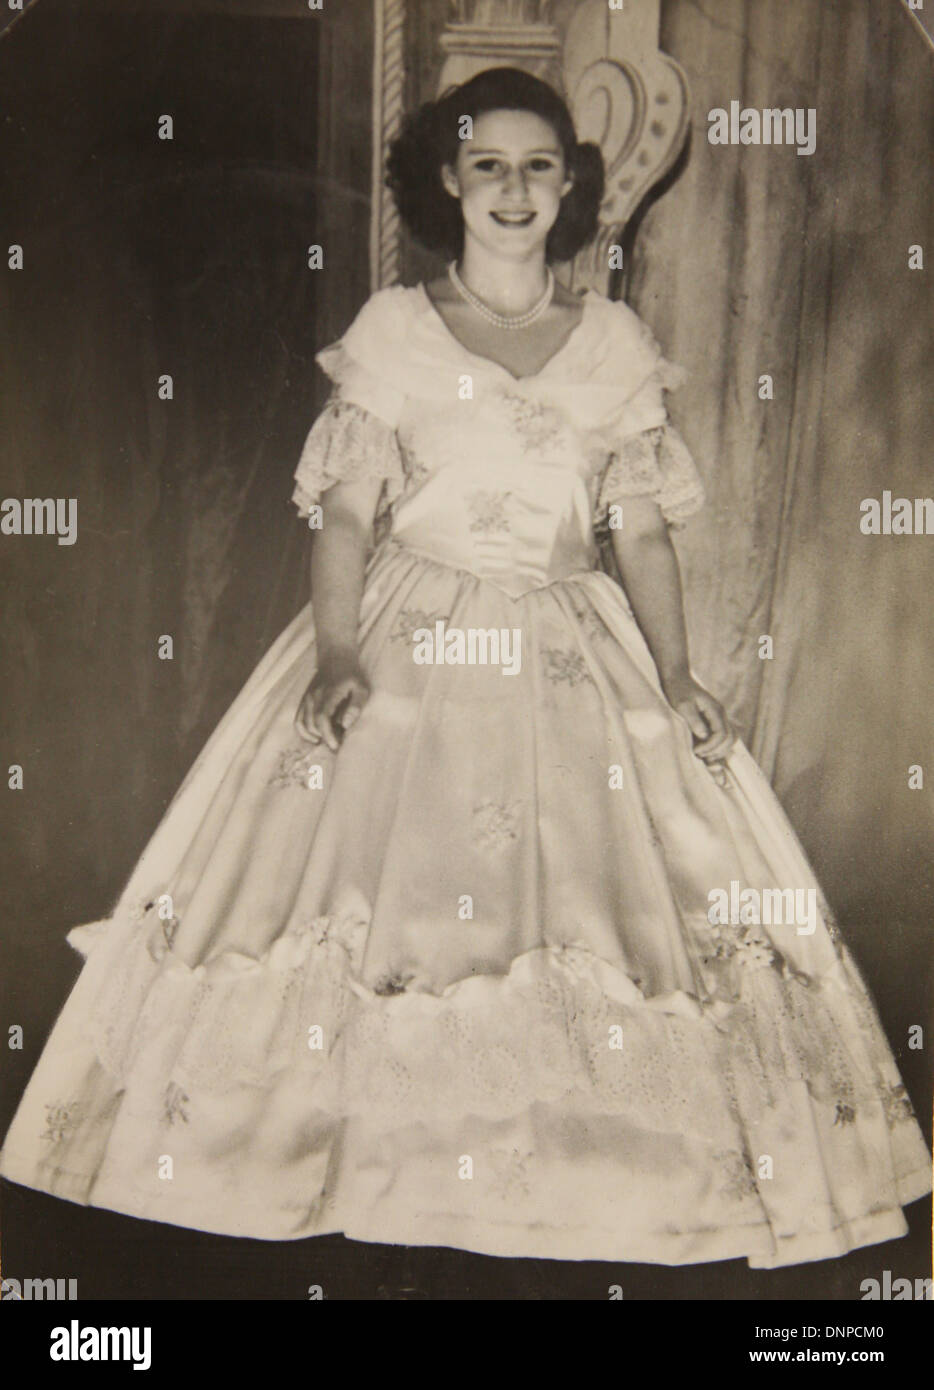 Recueillir des photographie de la Princesse Margaret dans la vieille mère jouer Red Riding Boots, 1944 Banque D'Images